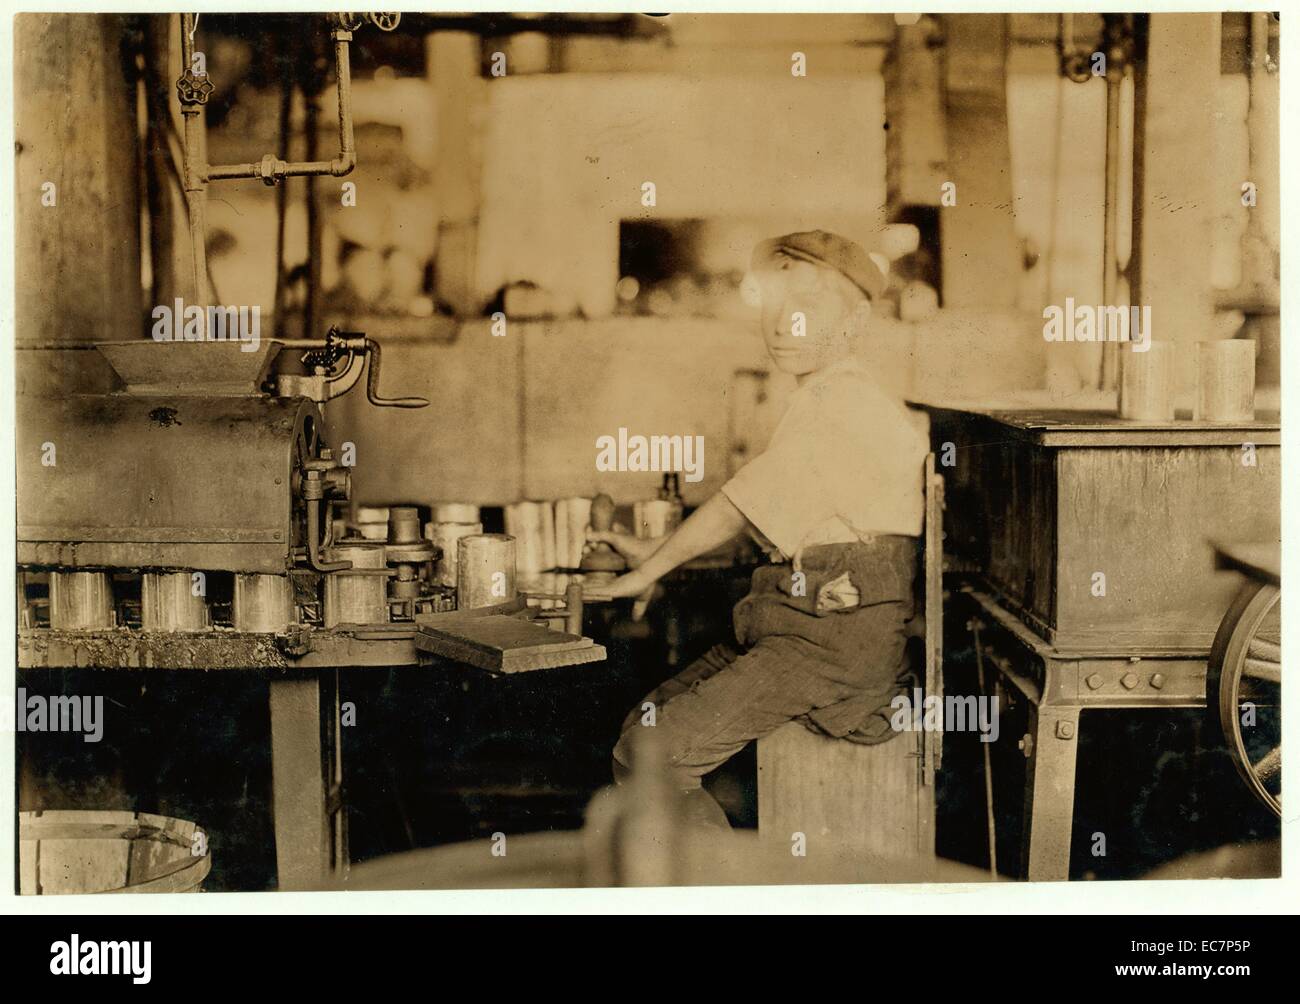 Gefährlich. Junge arbeiten an canning Maschine mit offene Getriebe. J. S. Farrand Verpackung Co. Juli 7, 1909. Ort: Baltimore, Maryland. Stockfoto